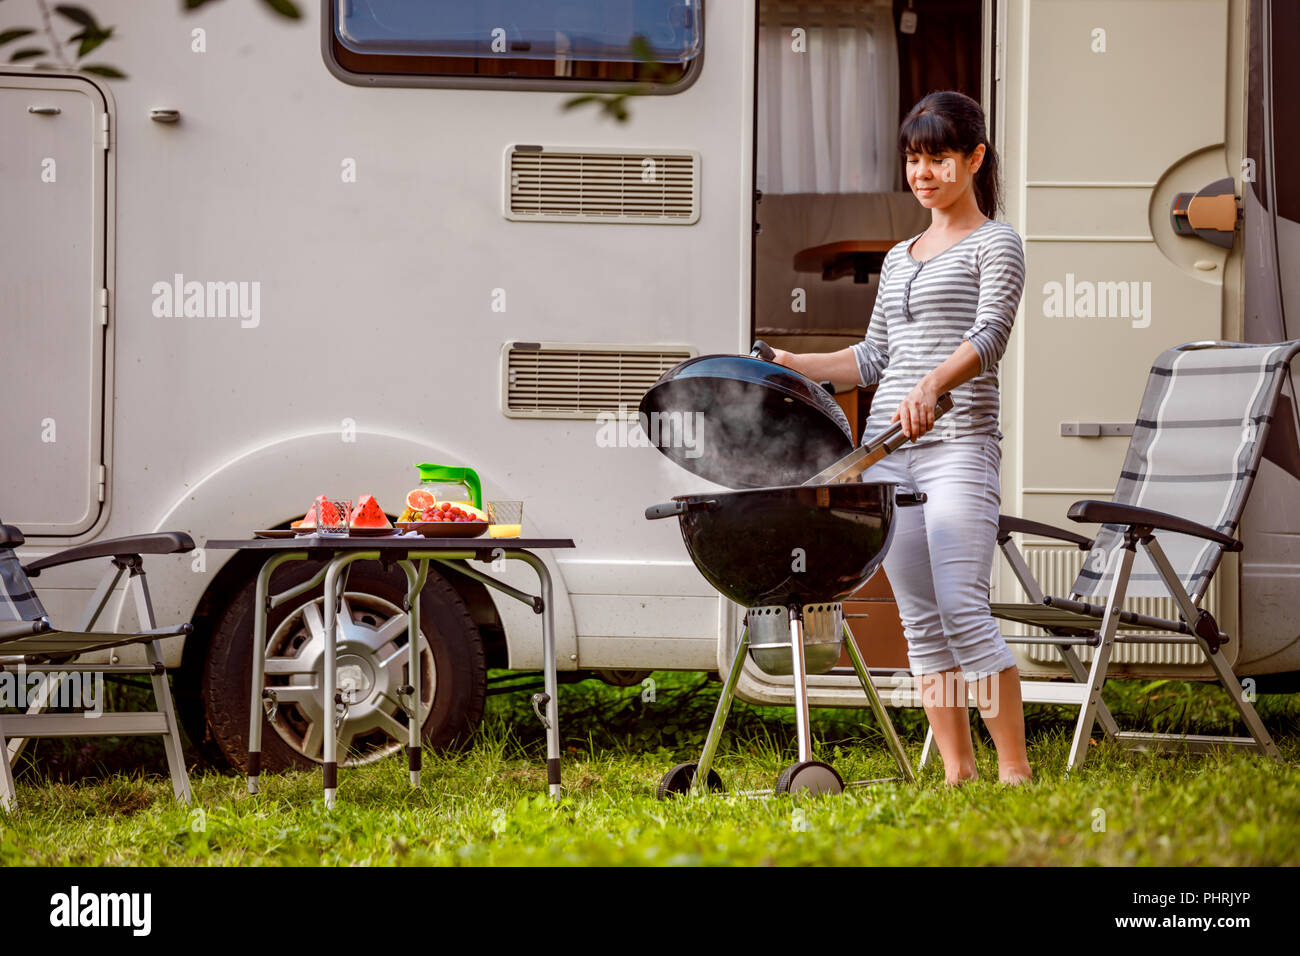 Vacances famille billet RV, vacances voyage en camping-car, caravane location de vacances. Pique-nique avec barbecue extérieur. Banque D'Images